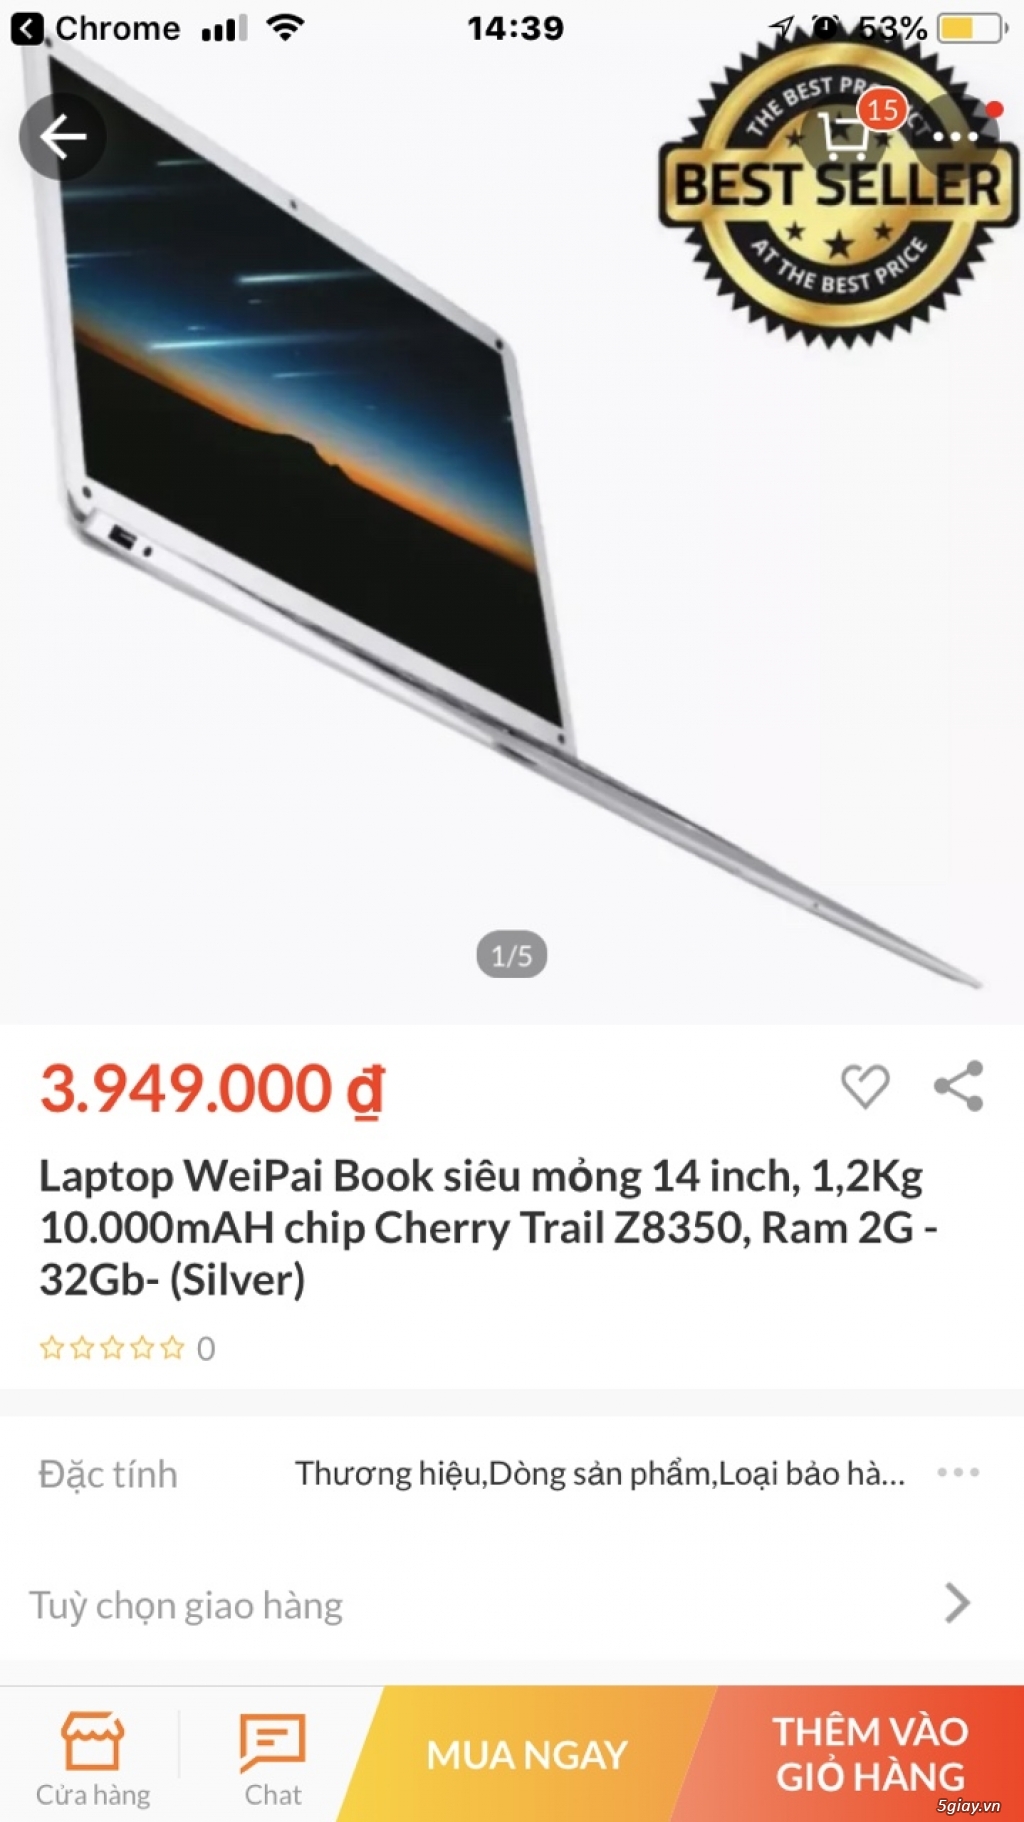 Cần bán Laptop WeiPai Book siêu mỏng 14 inch, 1,2Kg 10.000mAH - 2